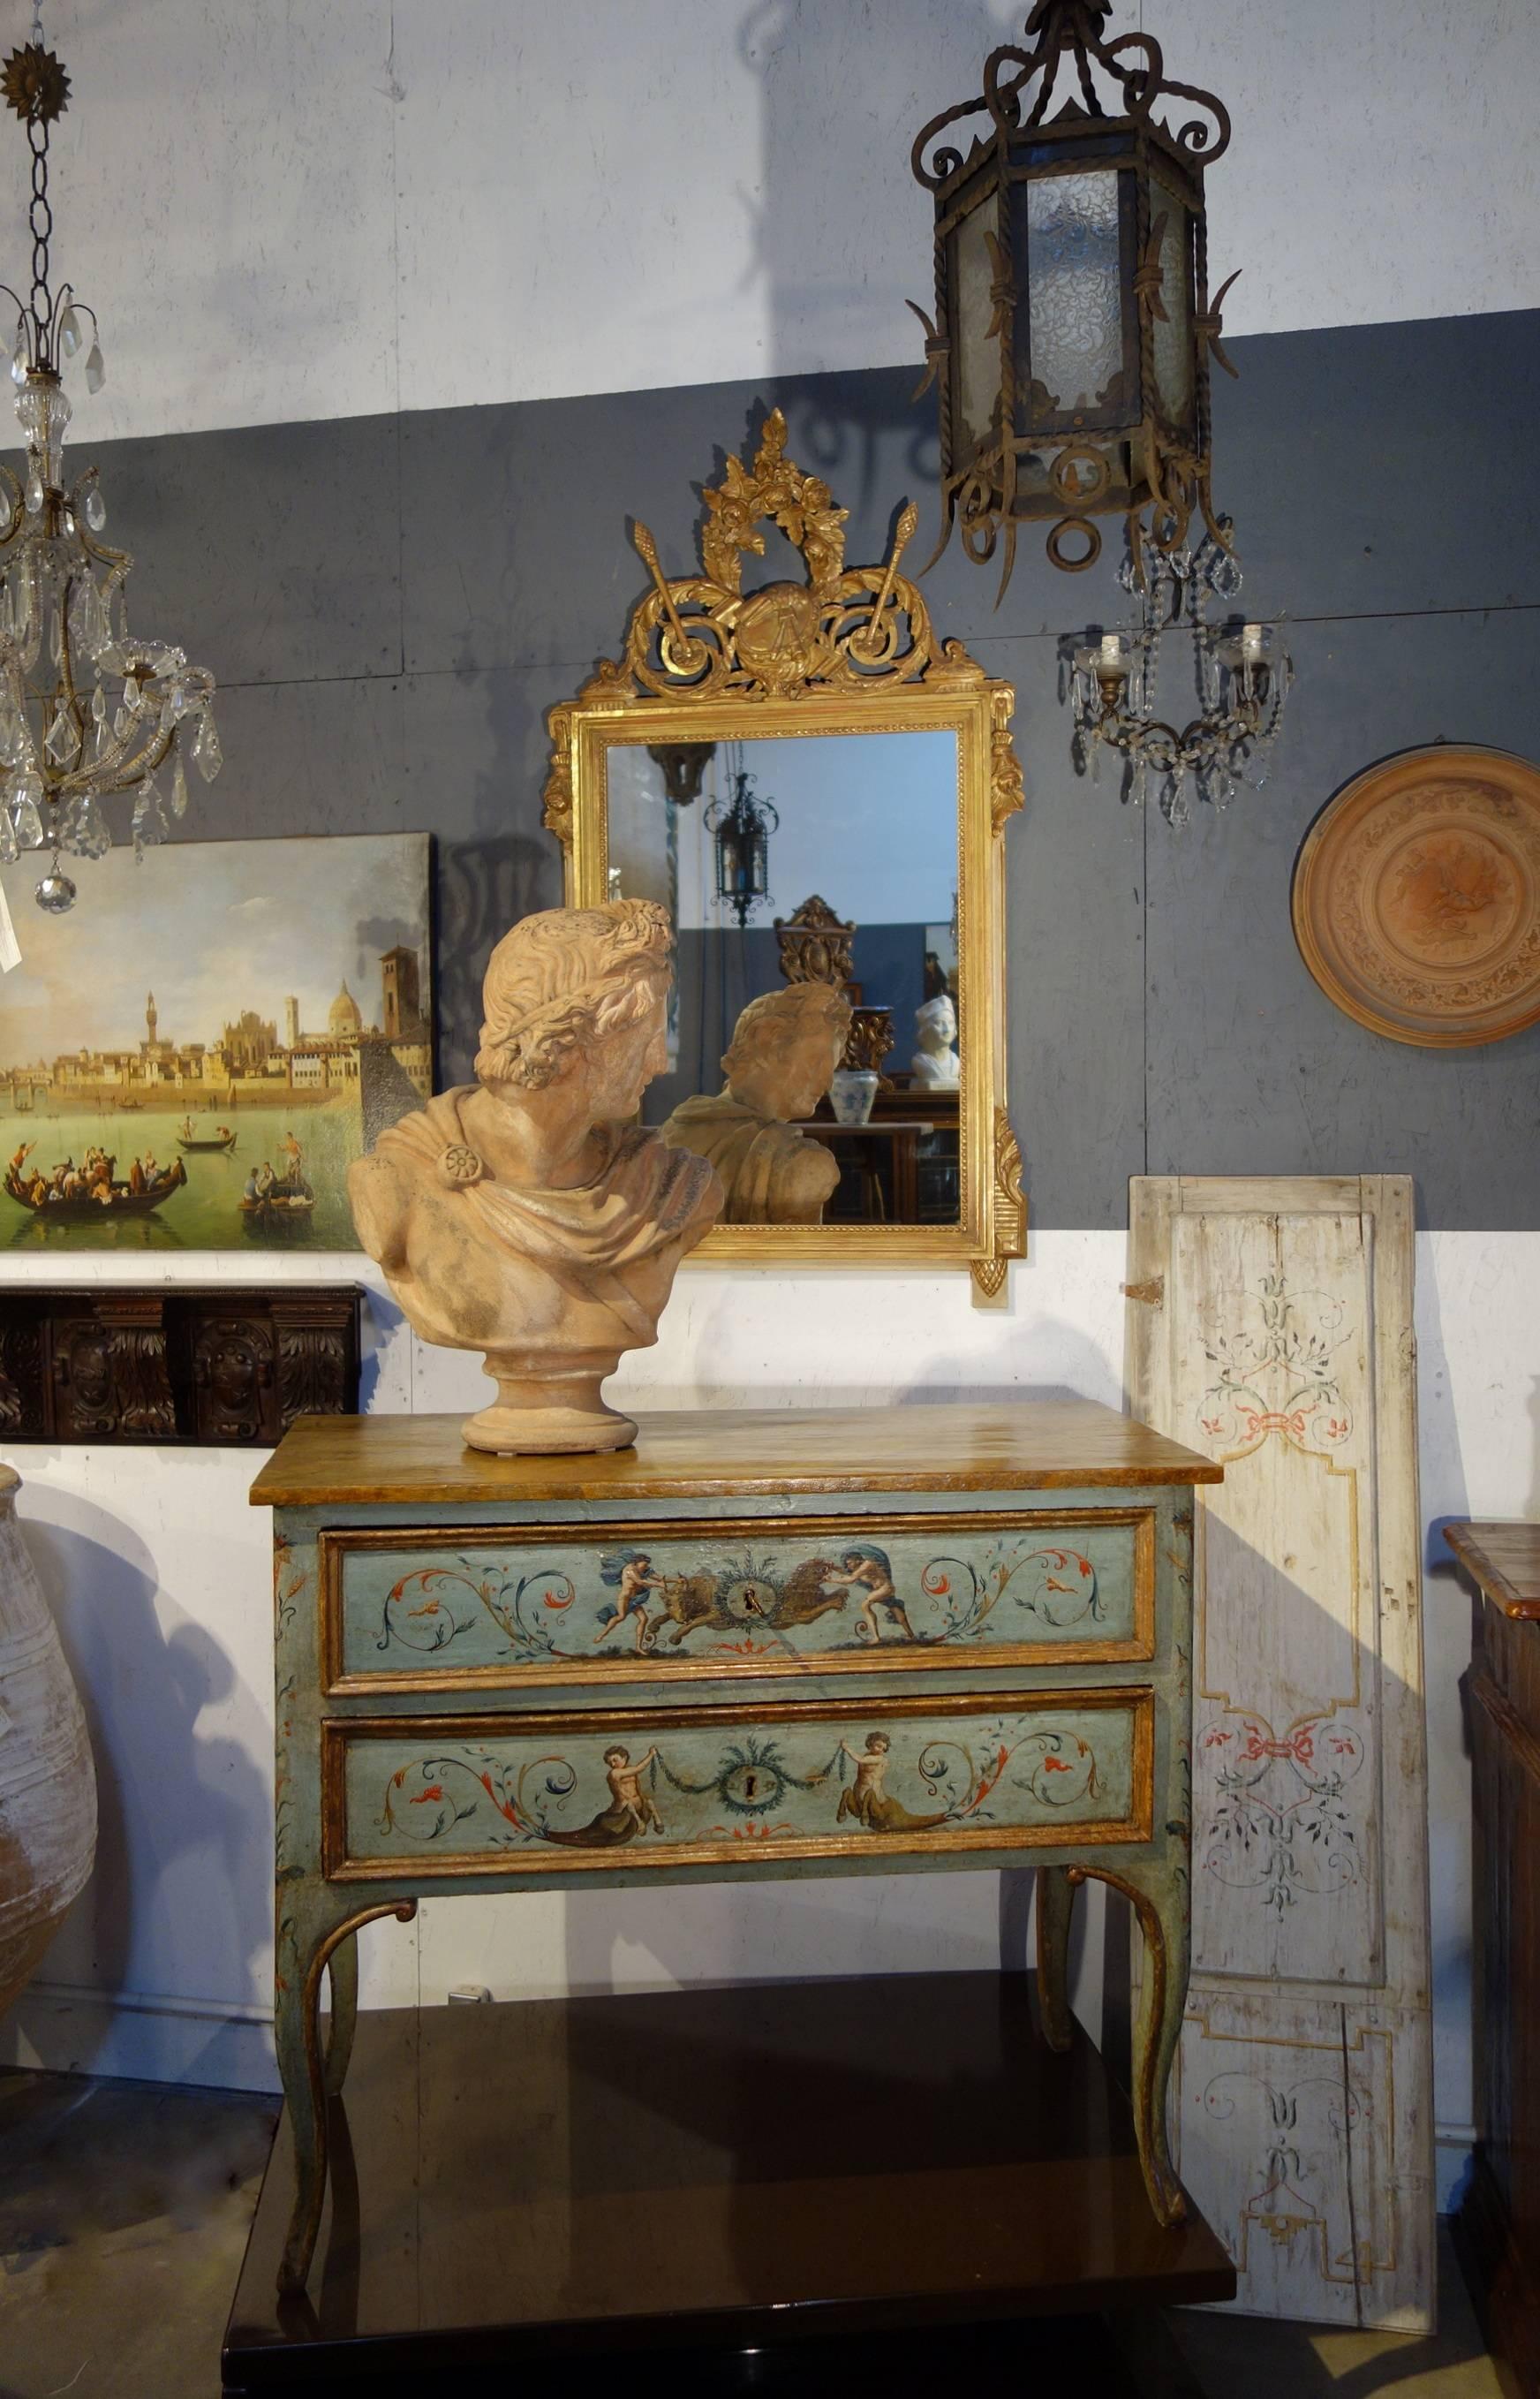 Une belle dorure sur cadre bolo permet une variation subtile du thème sur cette reproduction de miroir de style Louis XVI d'origine italienne. Belle échelle et réflectivité claire.

Mesures : 30,75